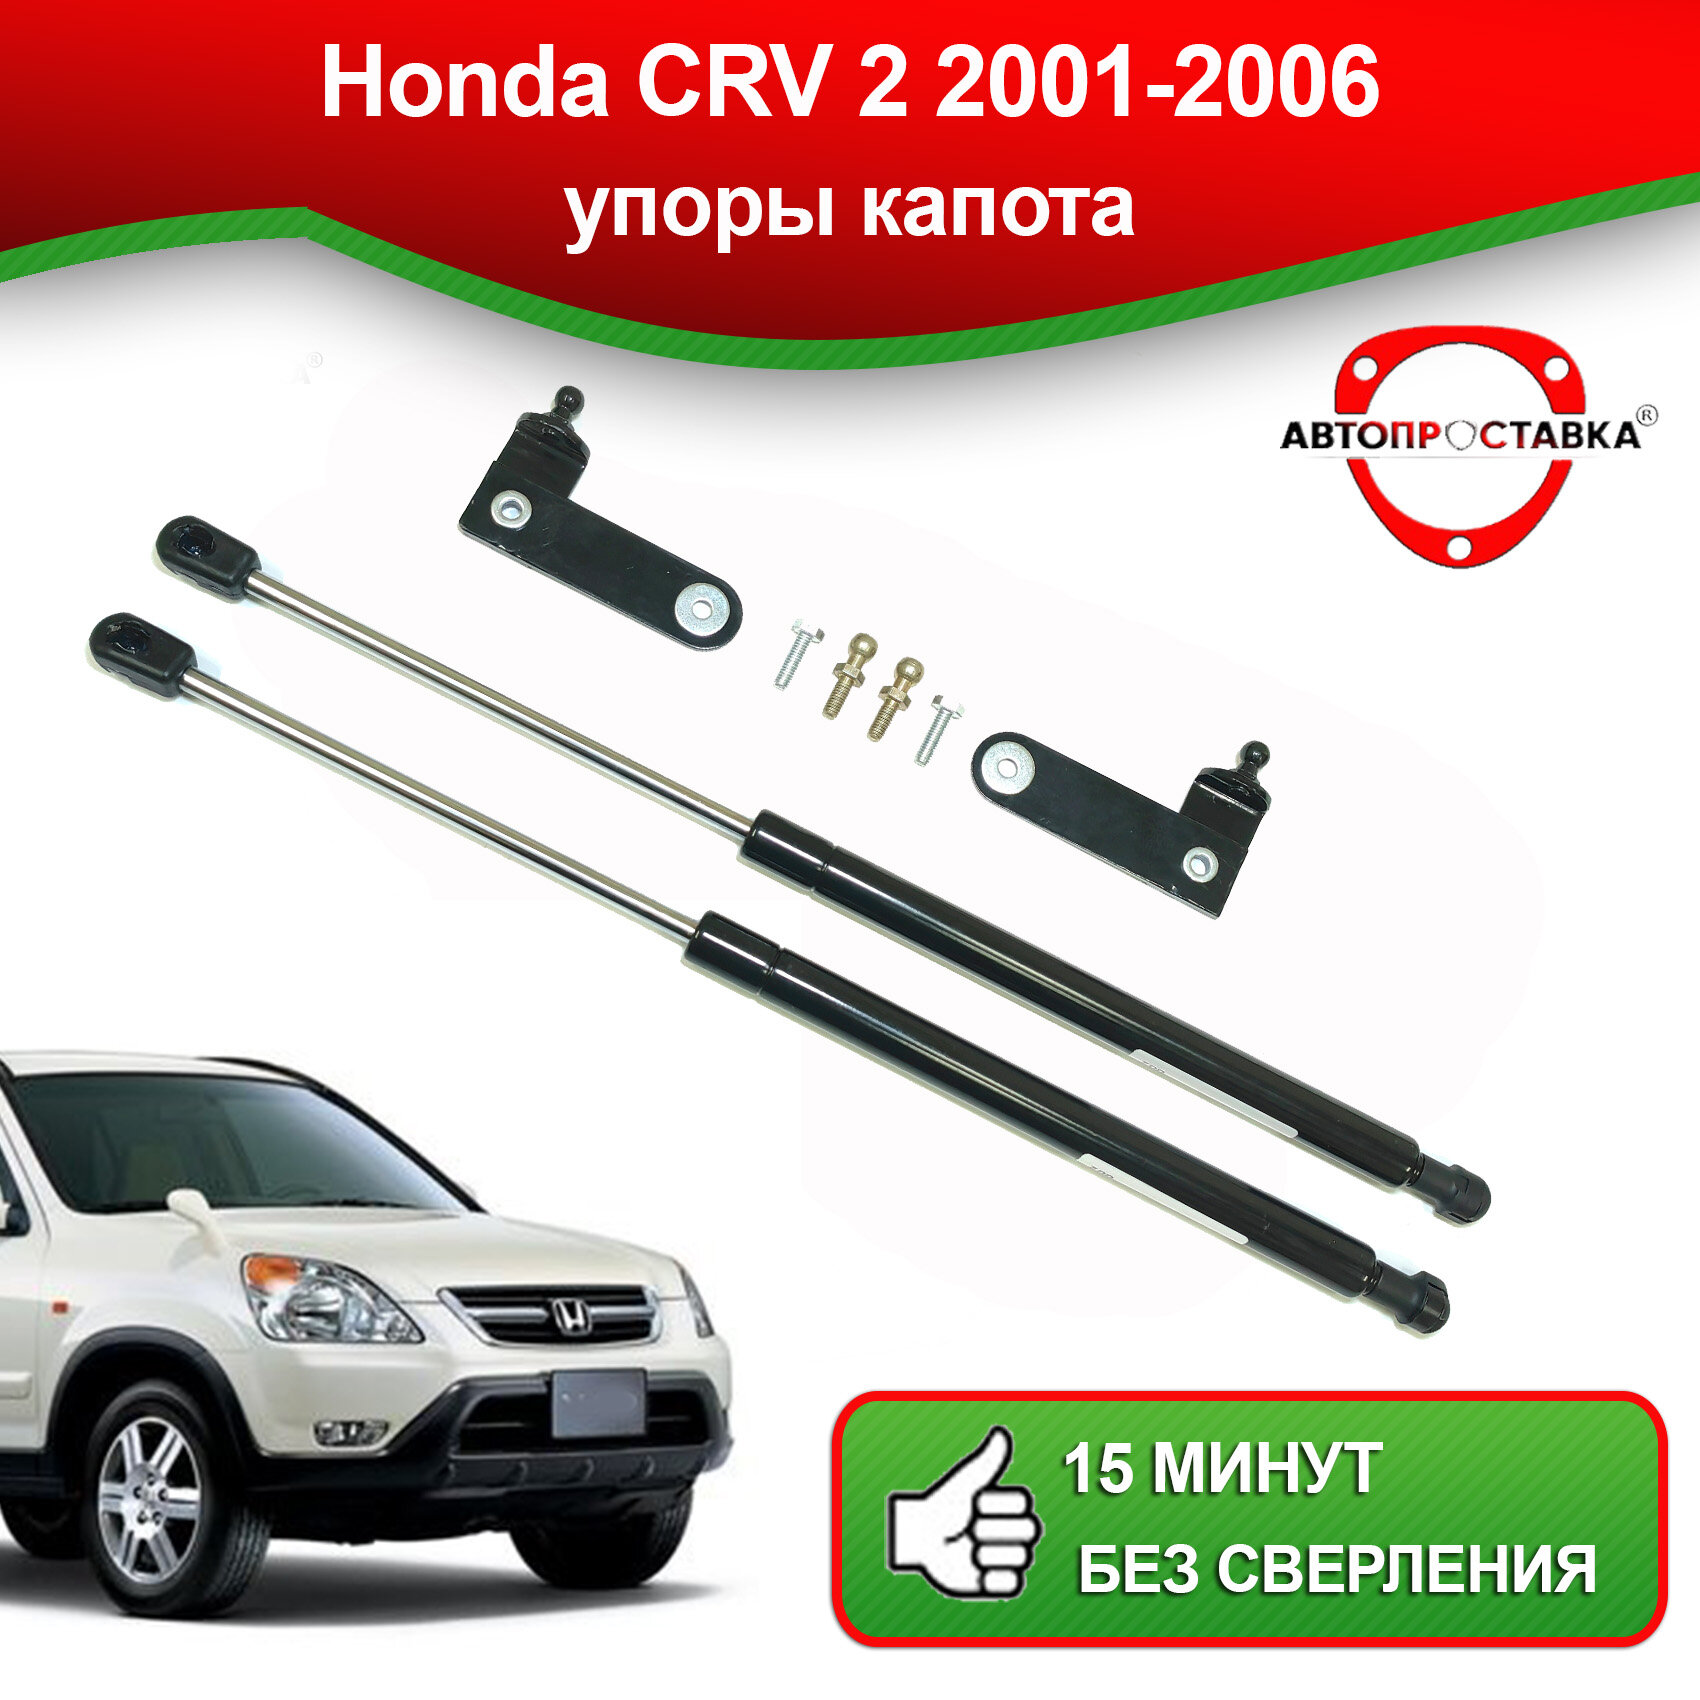 Упоры капота для Honda CRV 2 2001-2006 / Газовые амортизаторы капота Хонда СРВ 2 поколения